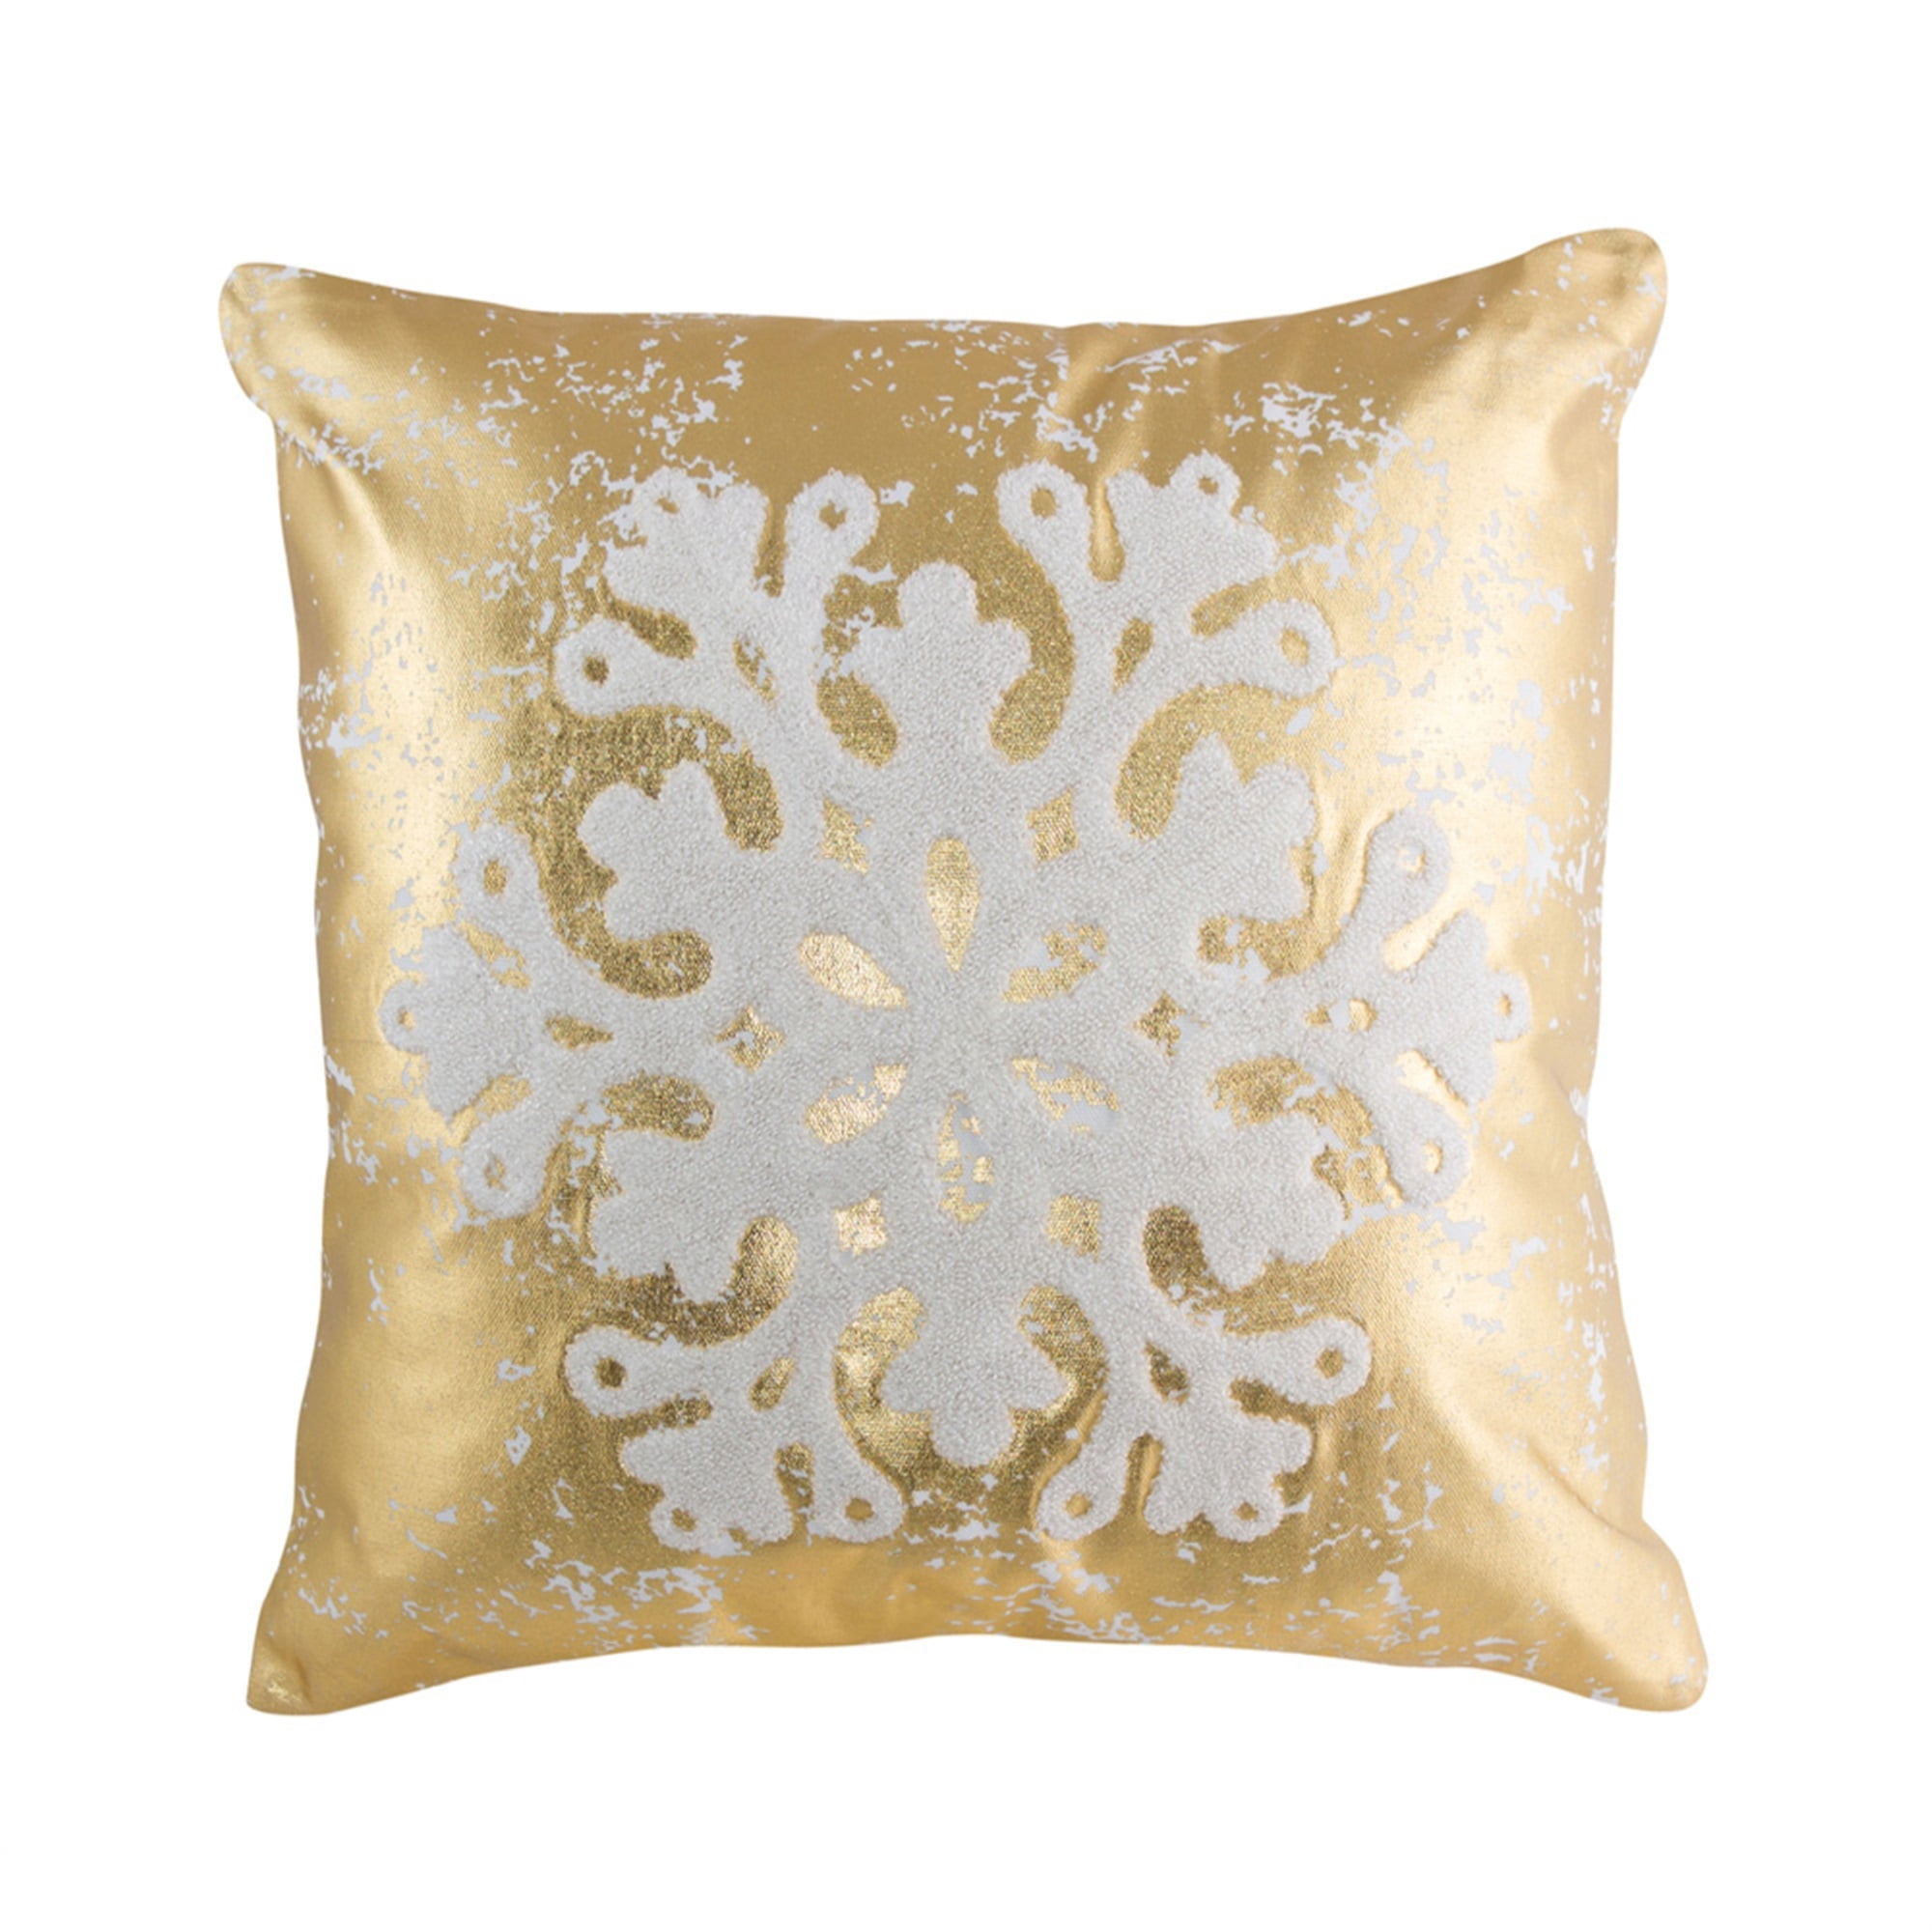 Snowflake Pillow 15.5" Polyester